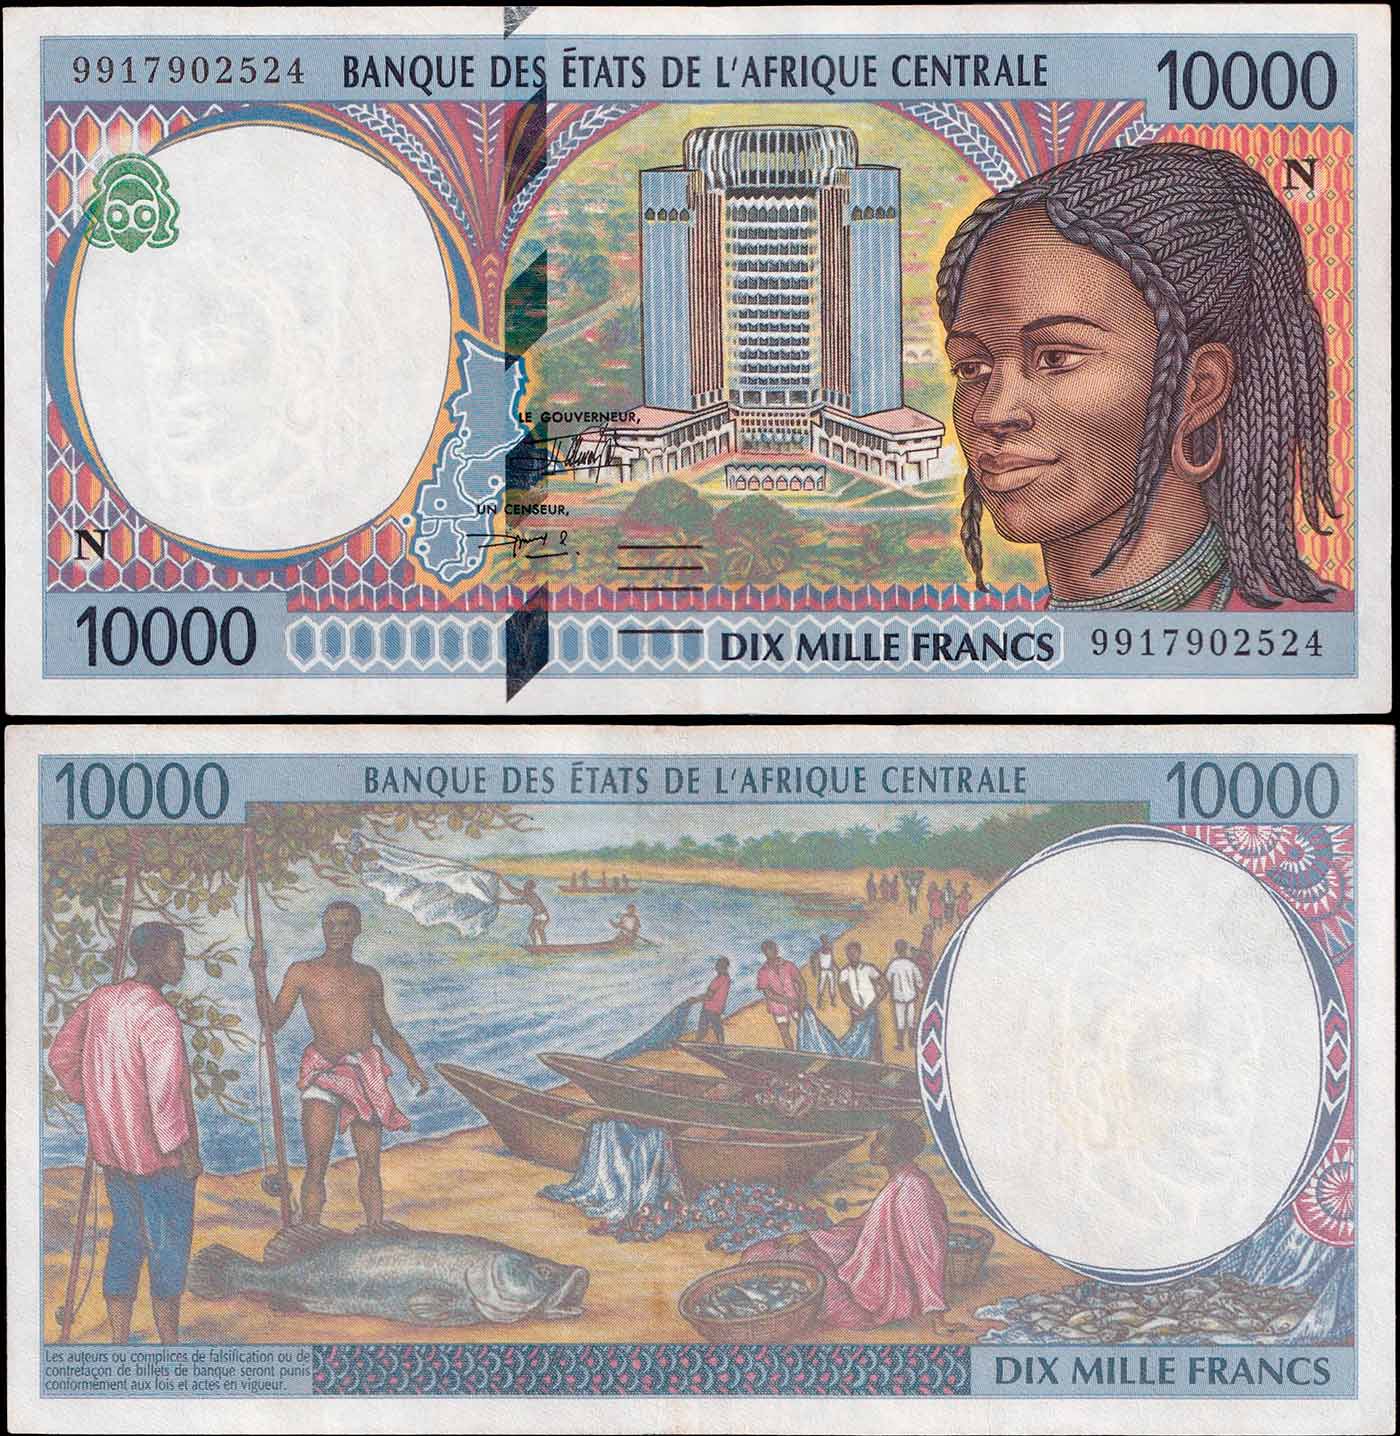 GUINEA EQUATORIALE (C.A.S.) 10000 Francs 1999 Stupenda